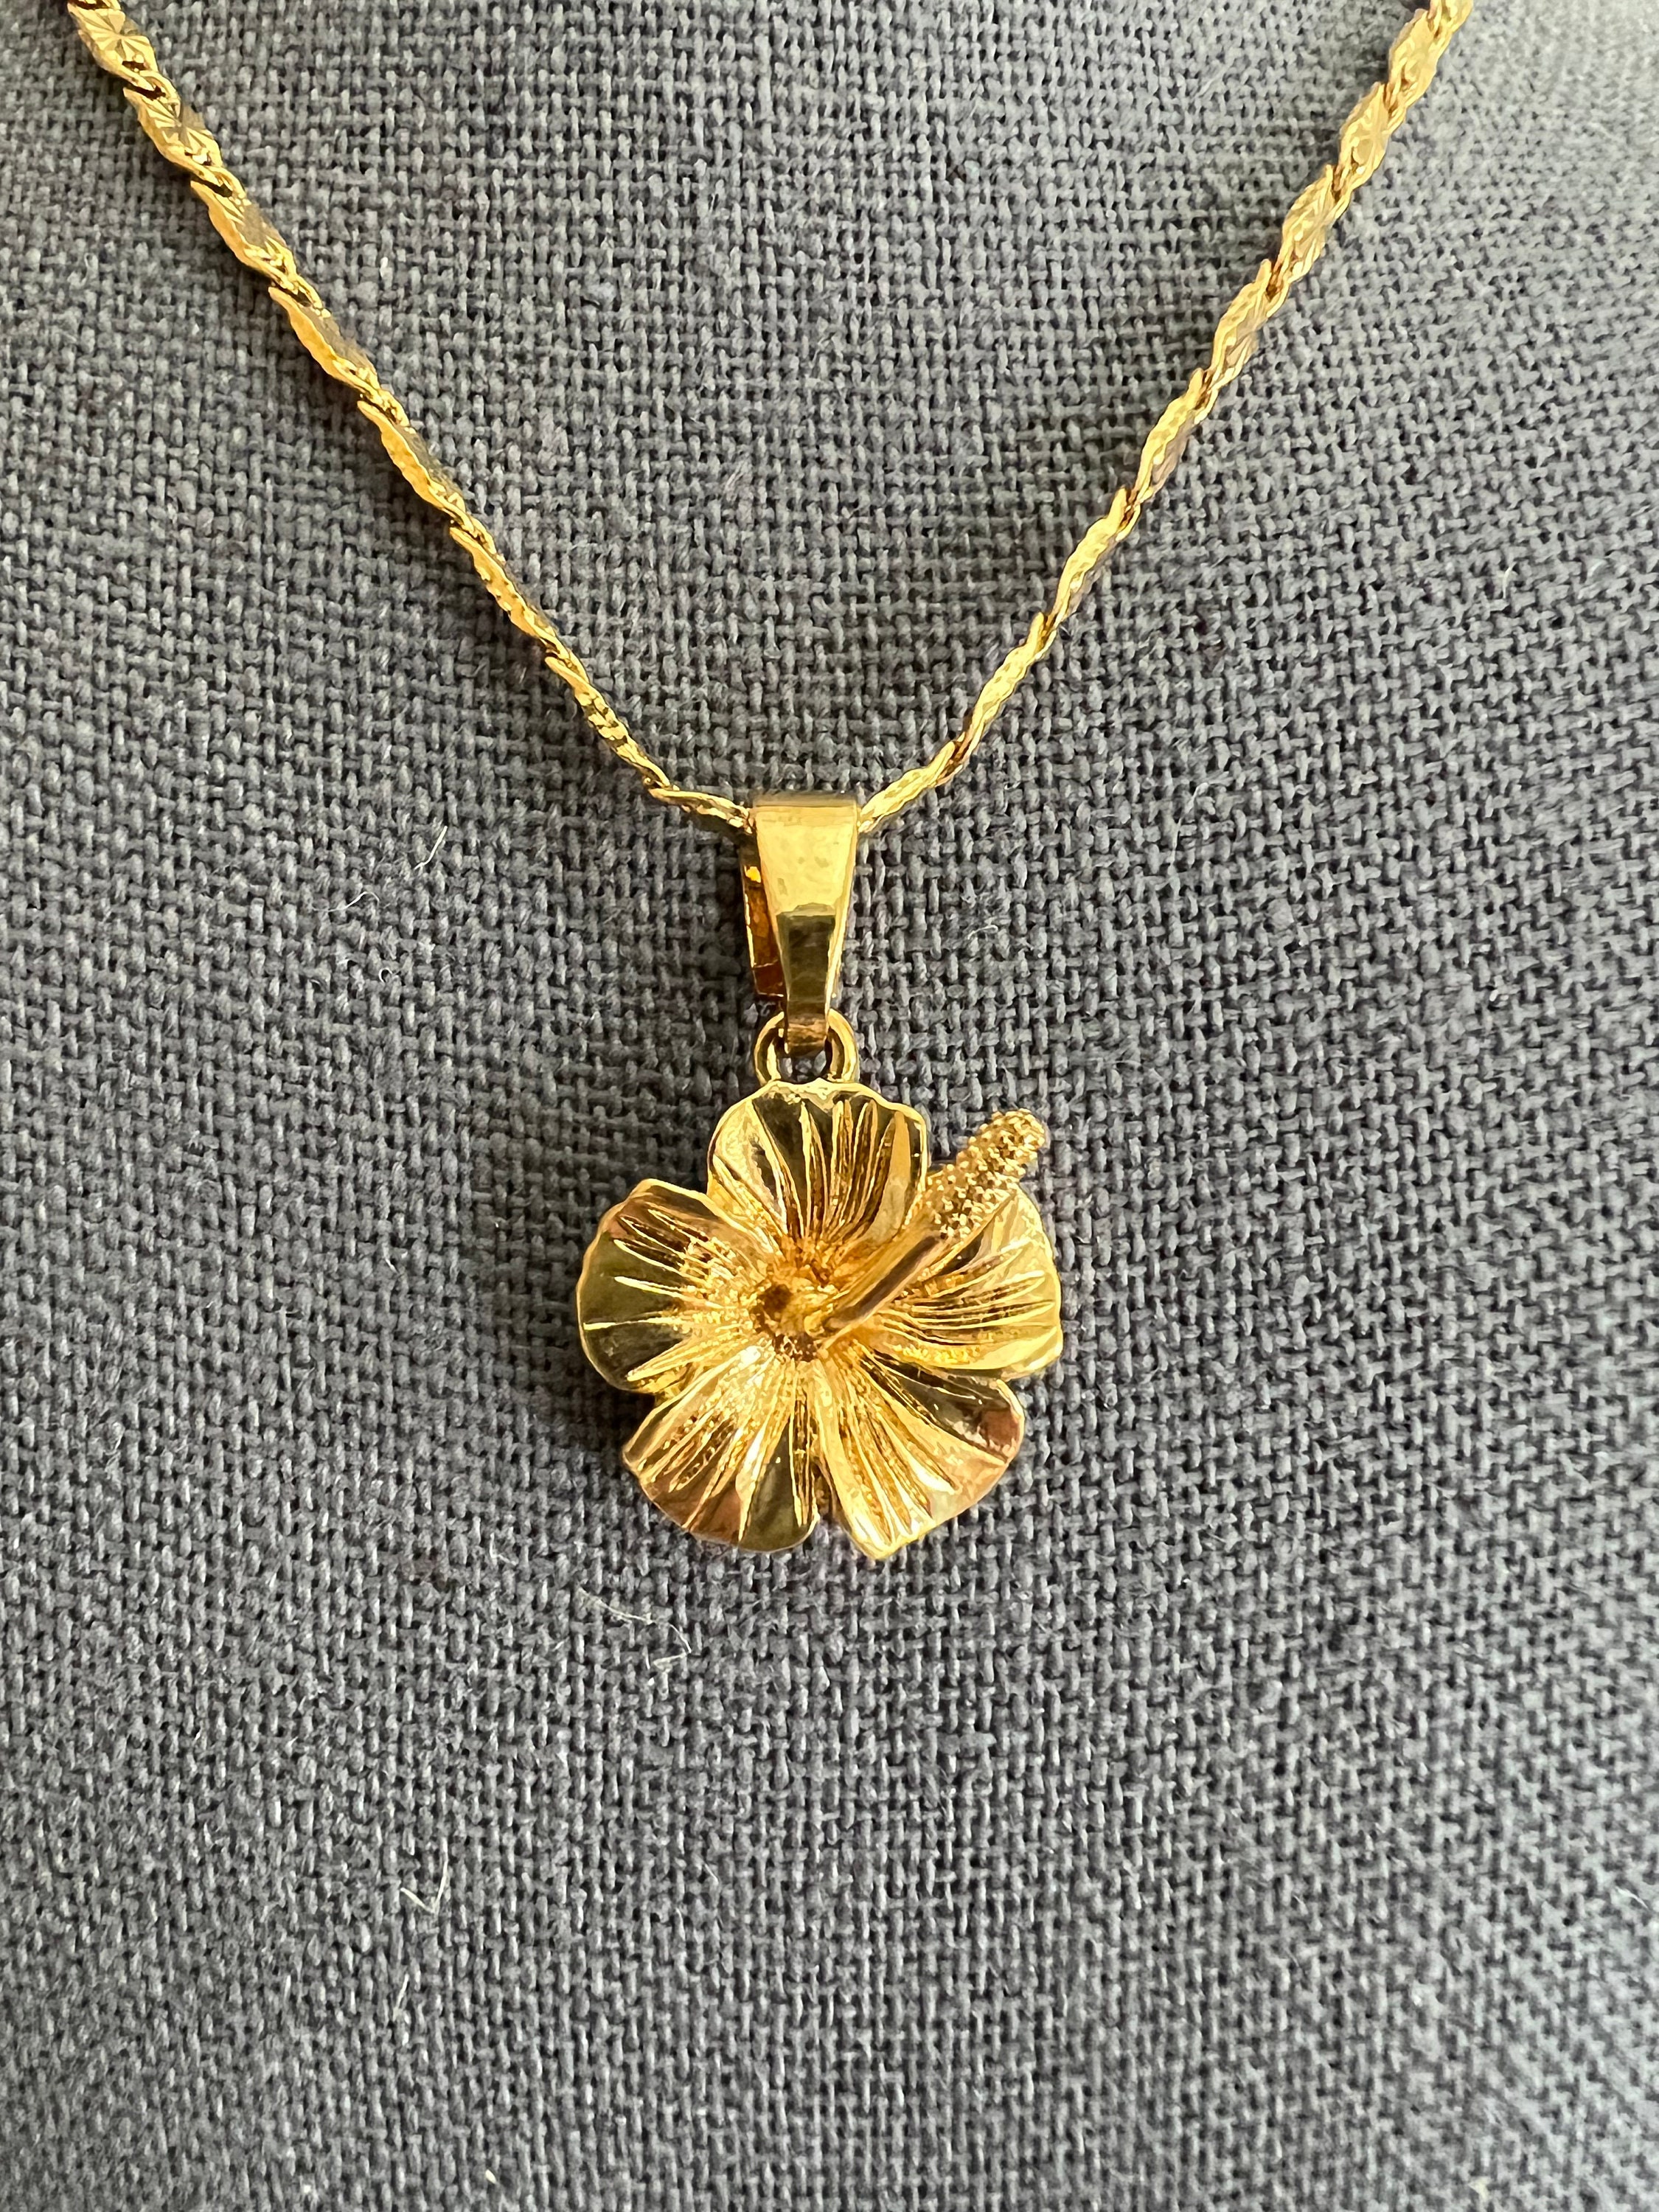 24K Pure Gold Pendant:Plumeria flower design